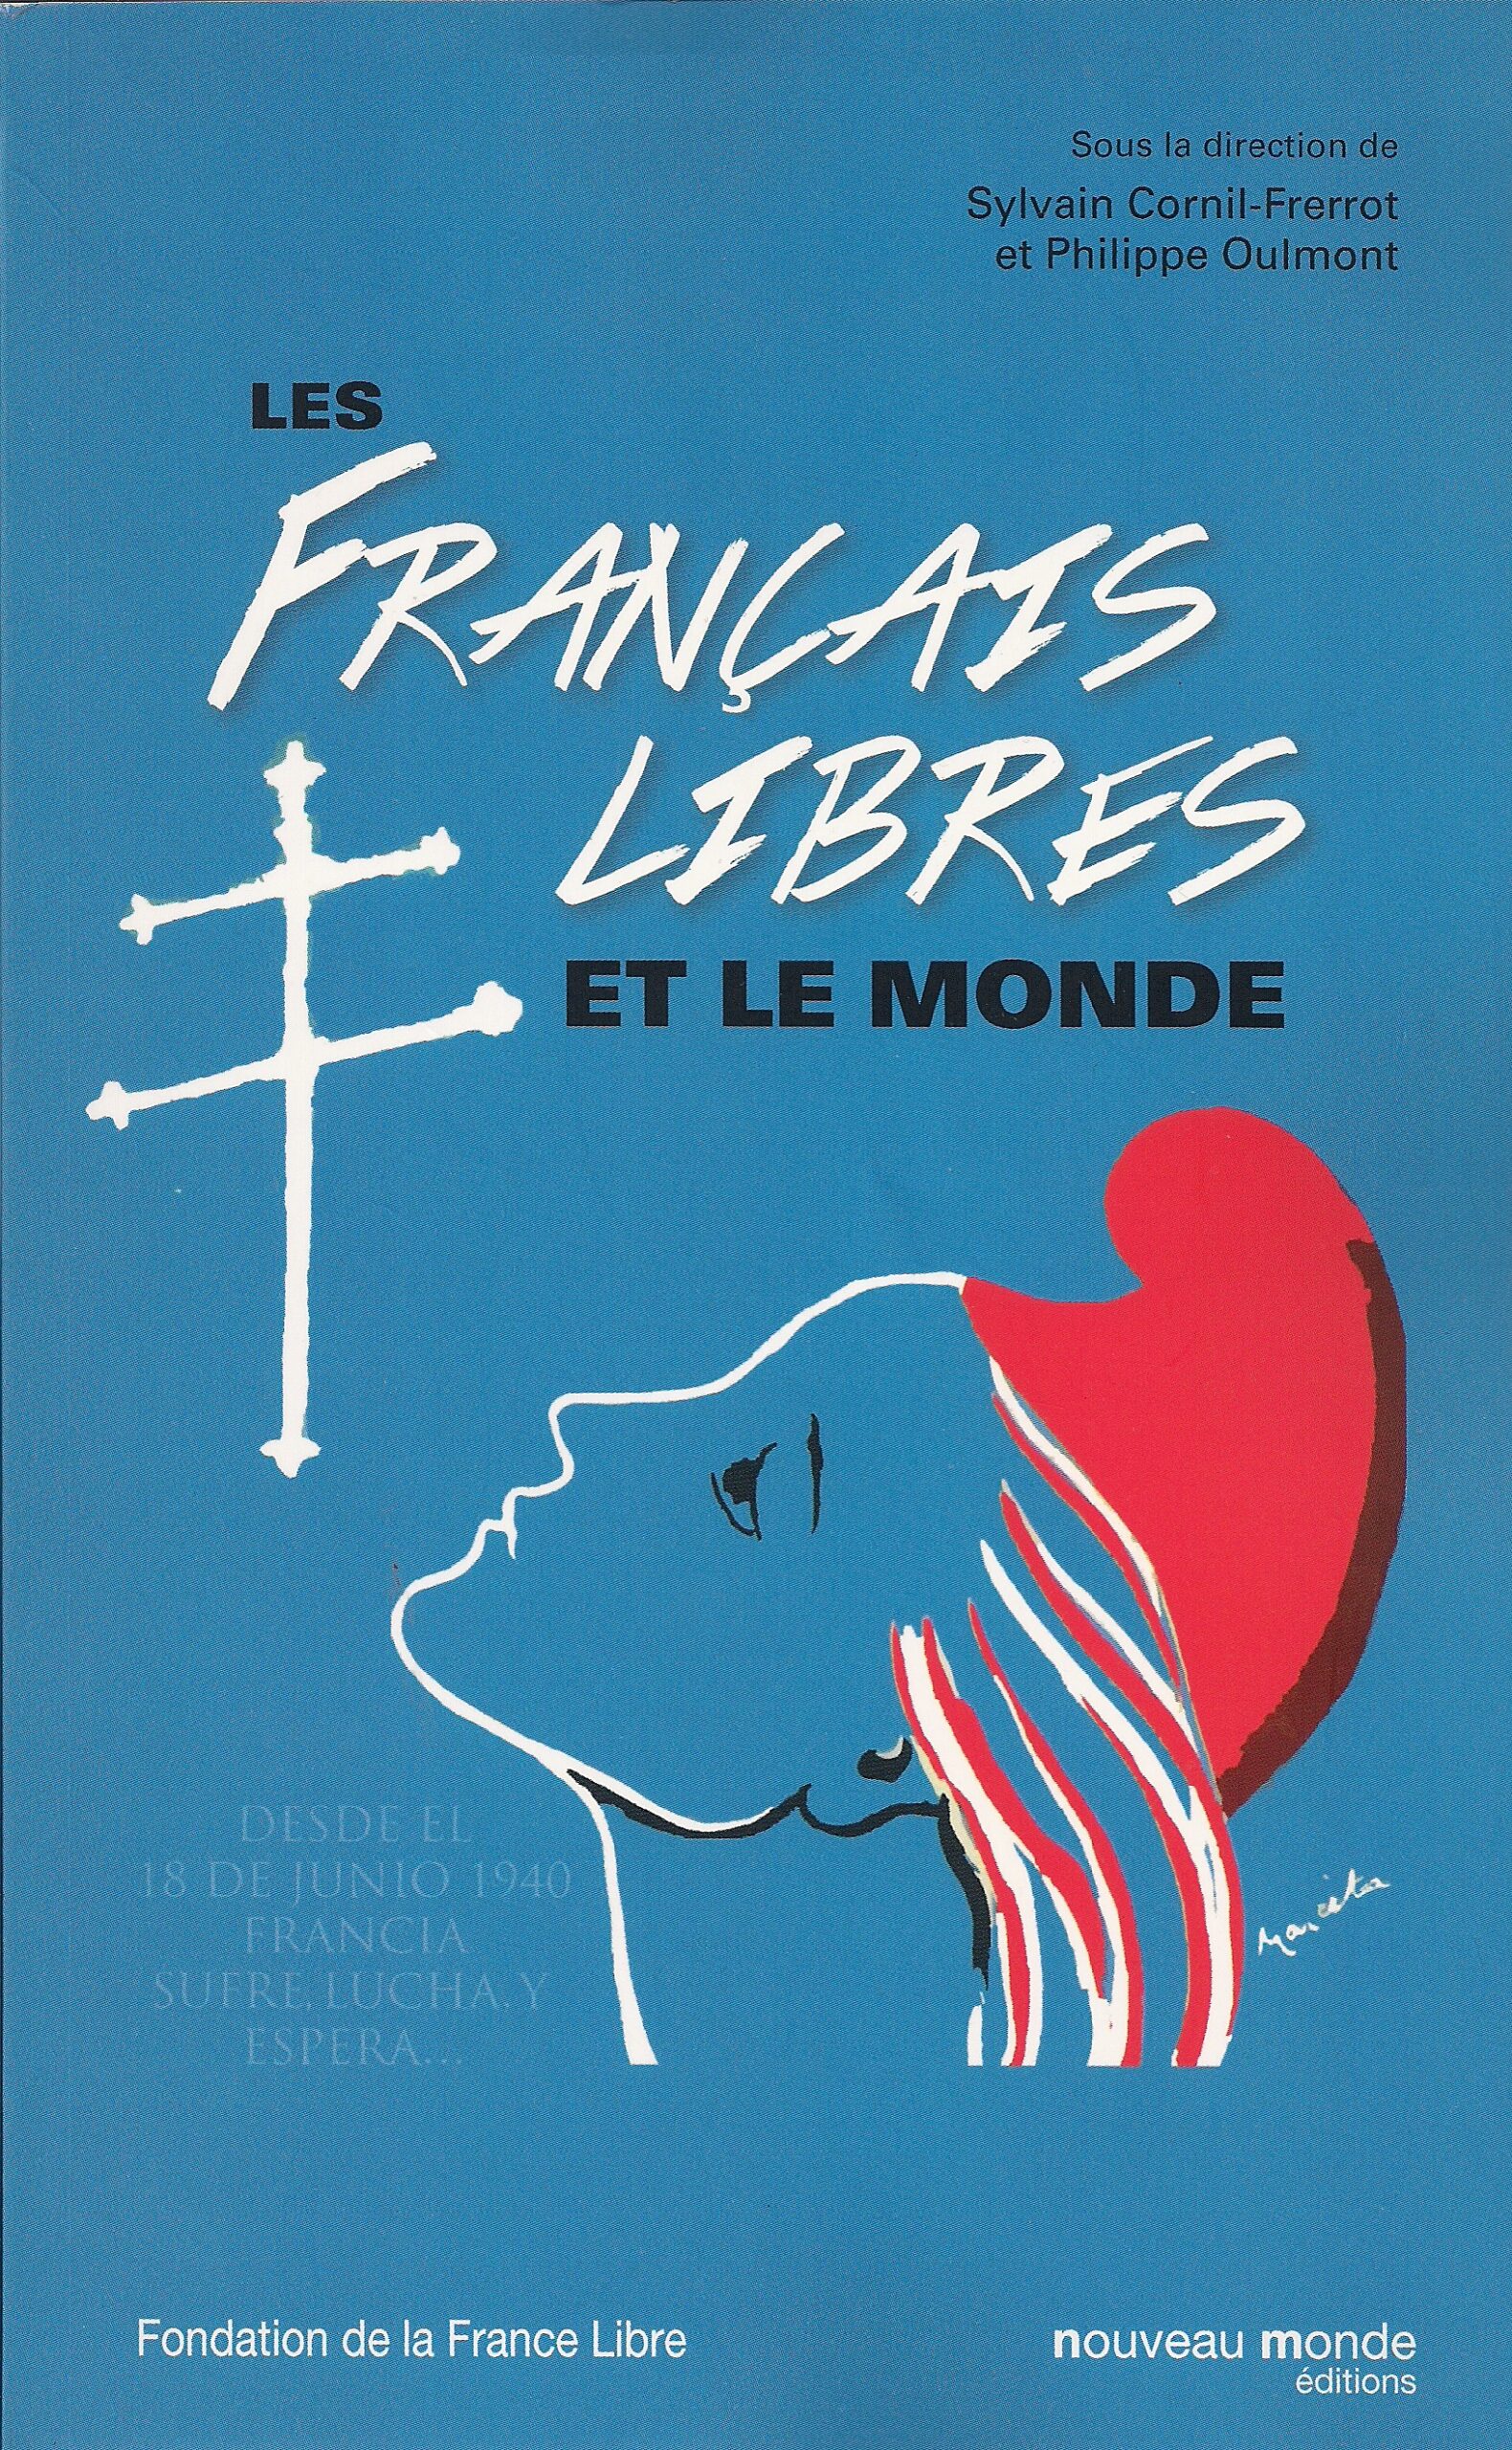 Les Français Libres et le monde (livre)